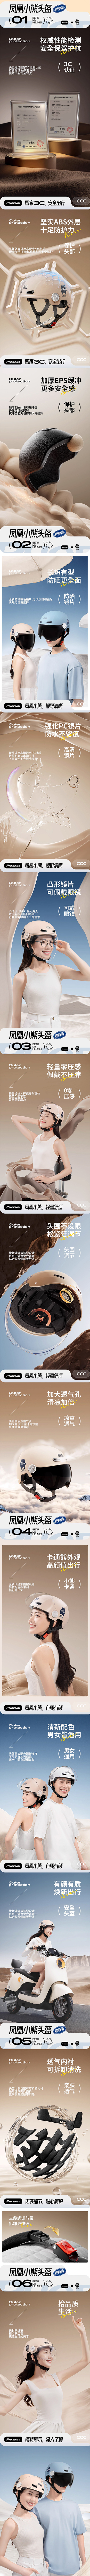 凤凰新国标3C认证电动车头盔 详情页设计